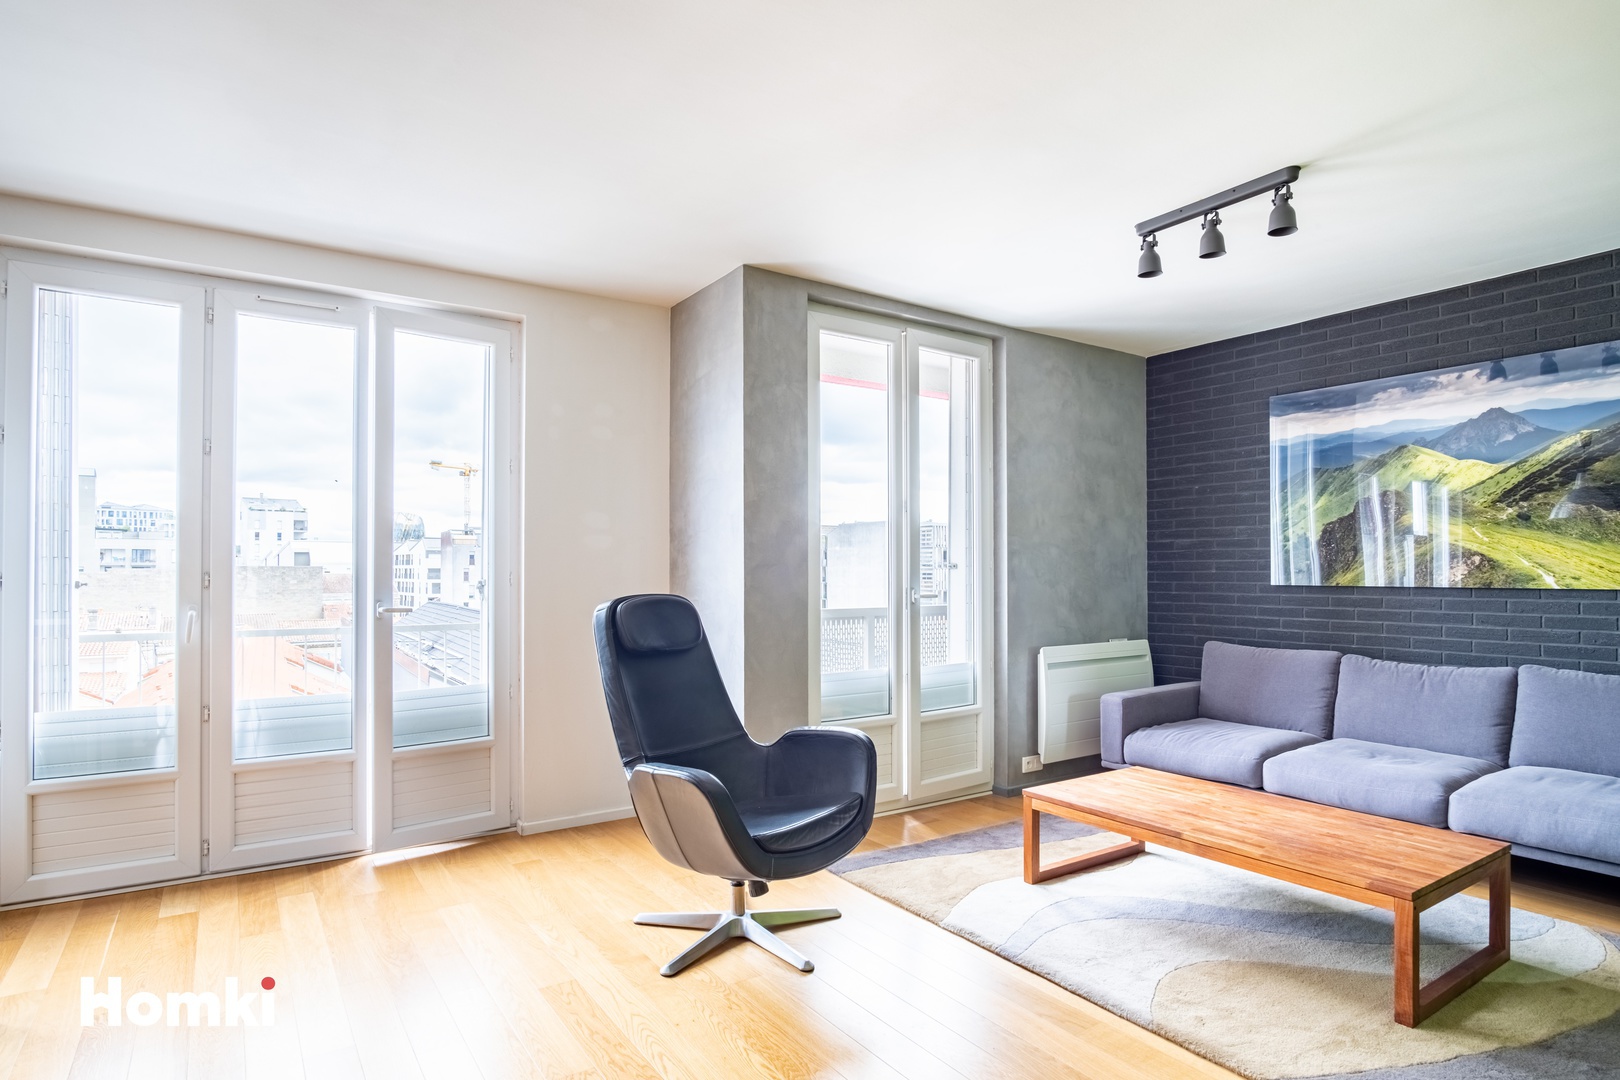 Homki - Vente Appartement  de 80.0 m² à Bordeaux 33300